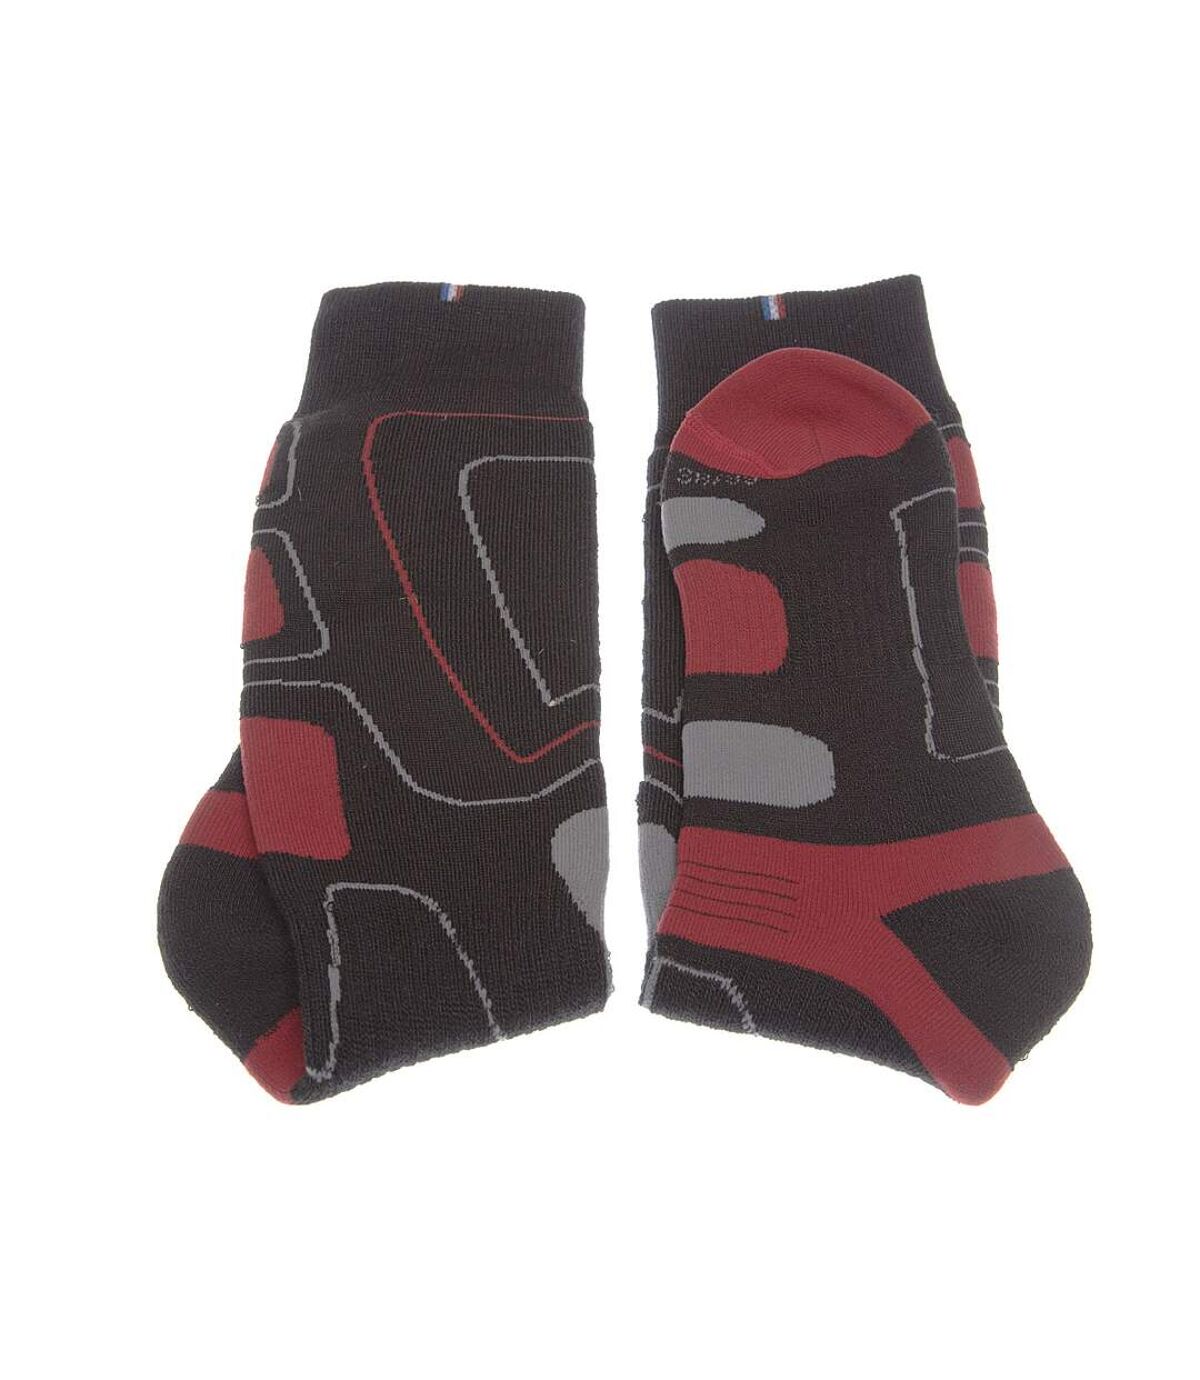 Chaussette Longues - 1 paire - Resserrage cou de pied - Non comprimantes - Bouclette talon et orteil - Pointe colorée - Ski - Chaude - Acrylique - Noir - Vanoise rouge